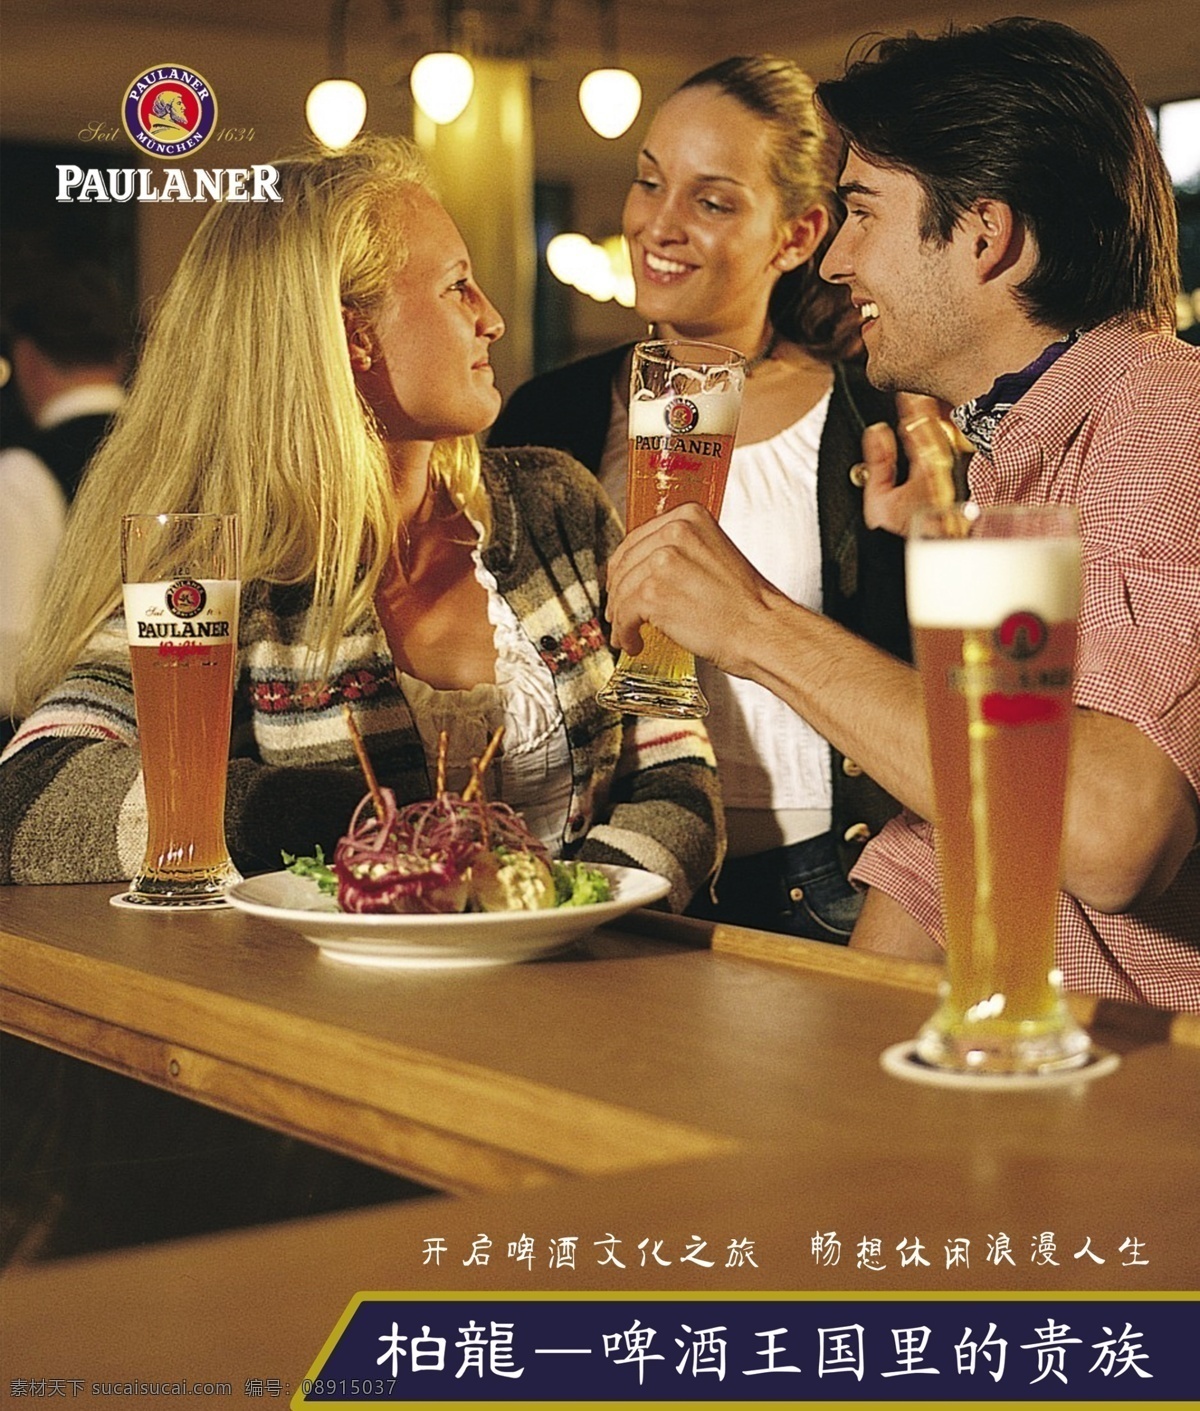 标 餐桌 德国 德国啤酒 广告设计模板 国外 男人 柏 龙 啤酒 模板下载 柏龙啤酒 柏龙 外国 外国女人 外国男人 女人 矢量 源文件 矢量图 日常生活